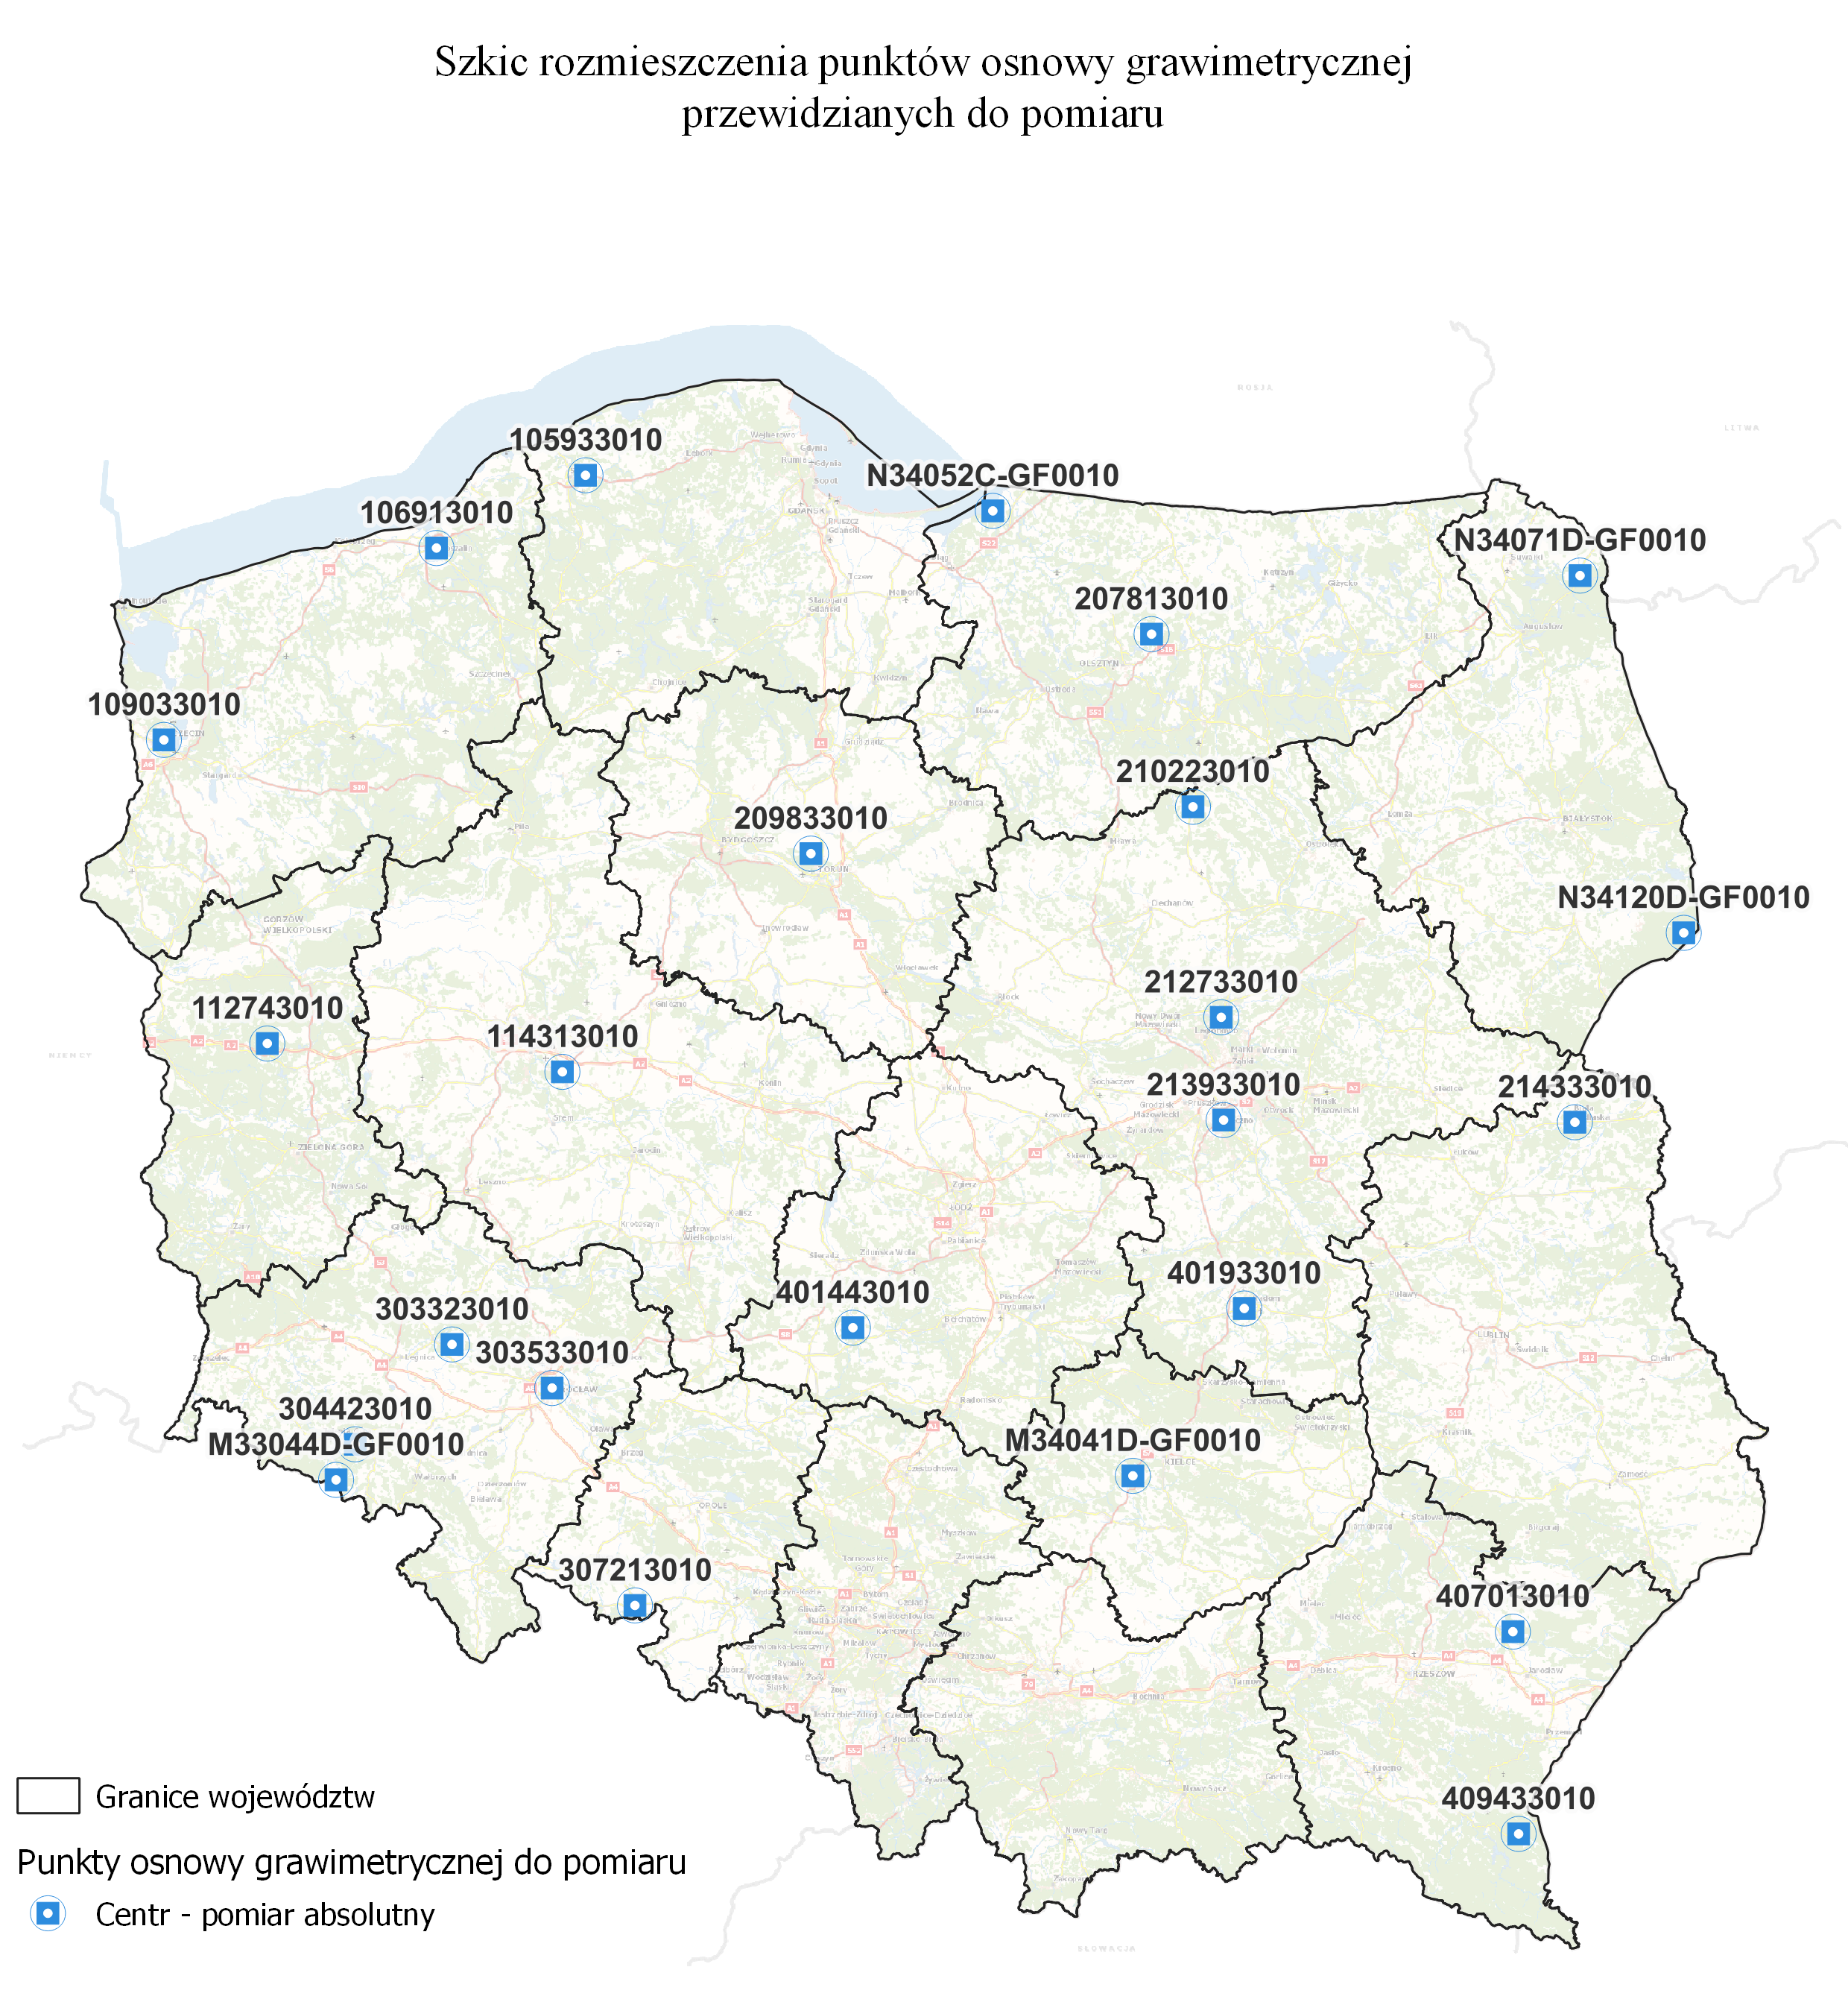 Ilustracja przedstawia mapę Polski z rozmieszczeniem punktów przewidzianych do opracowania w ramach podpisanej umowy.